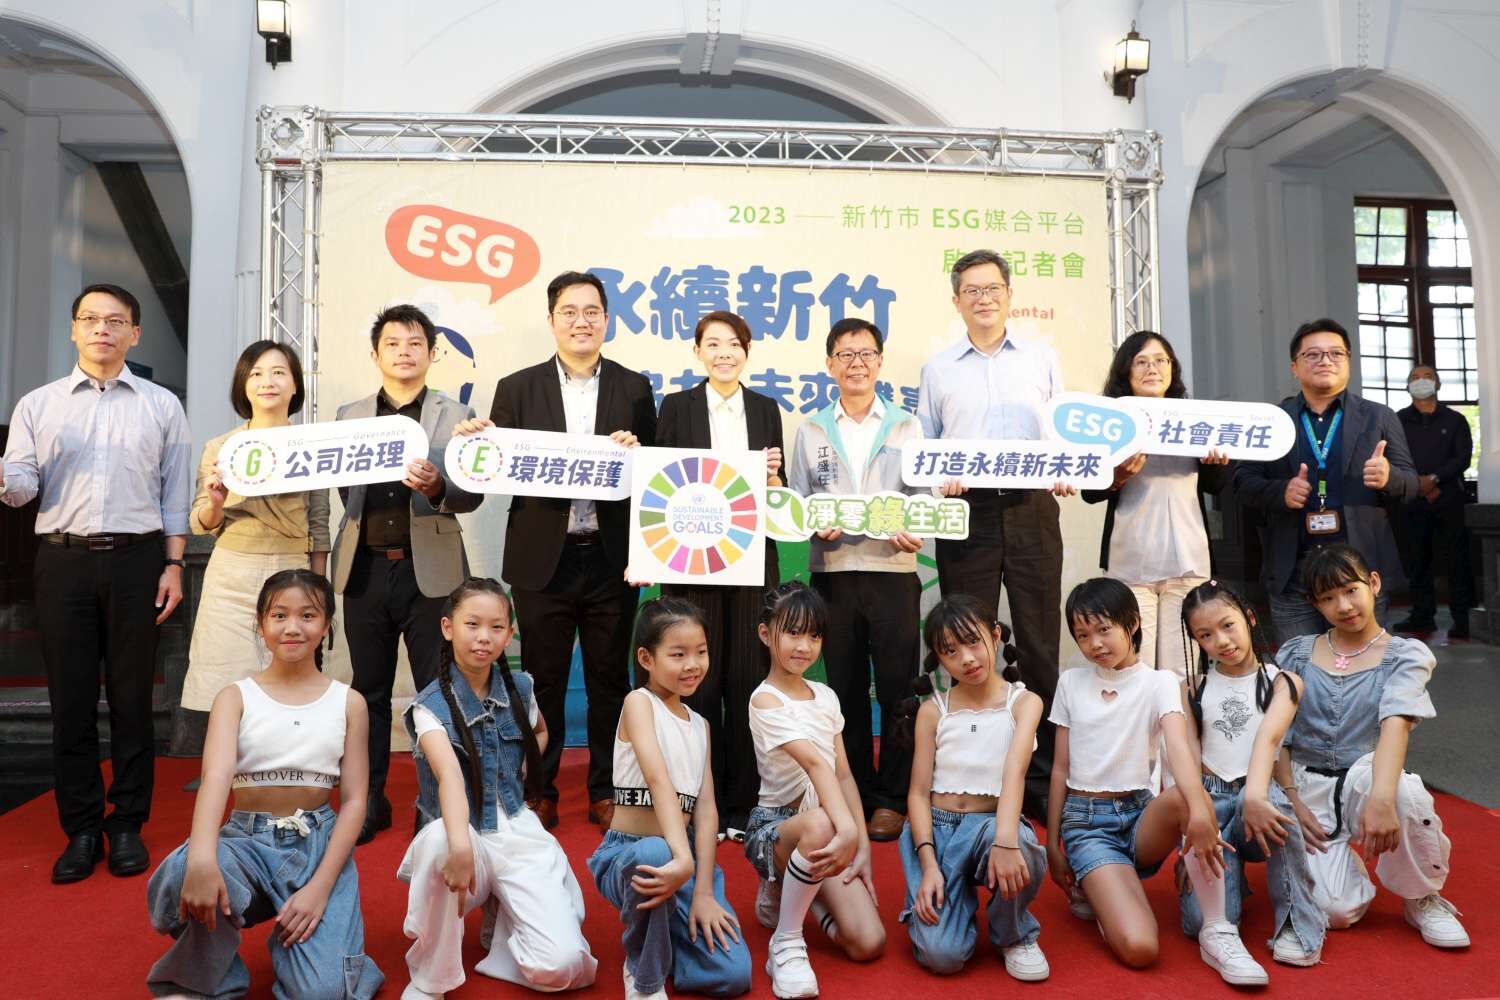 竹市全國首創ESG媒合平台　邀企業攜手打造「宜居永續」城市大圖